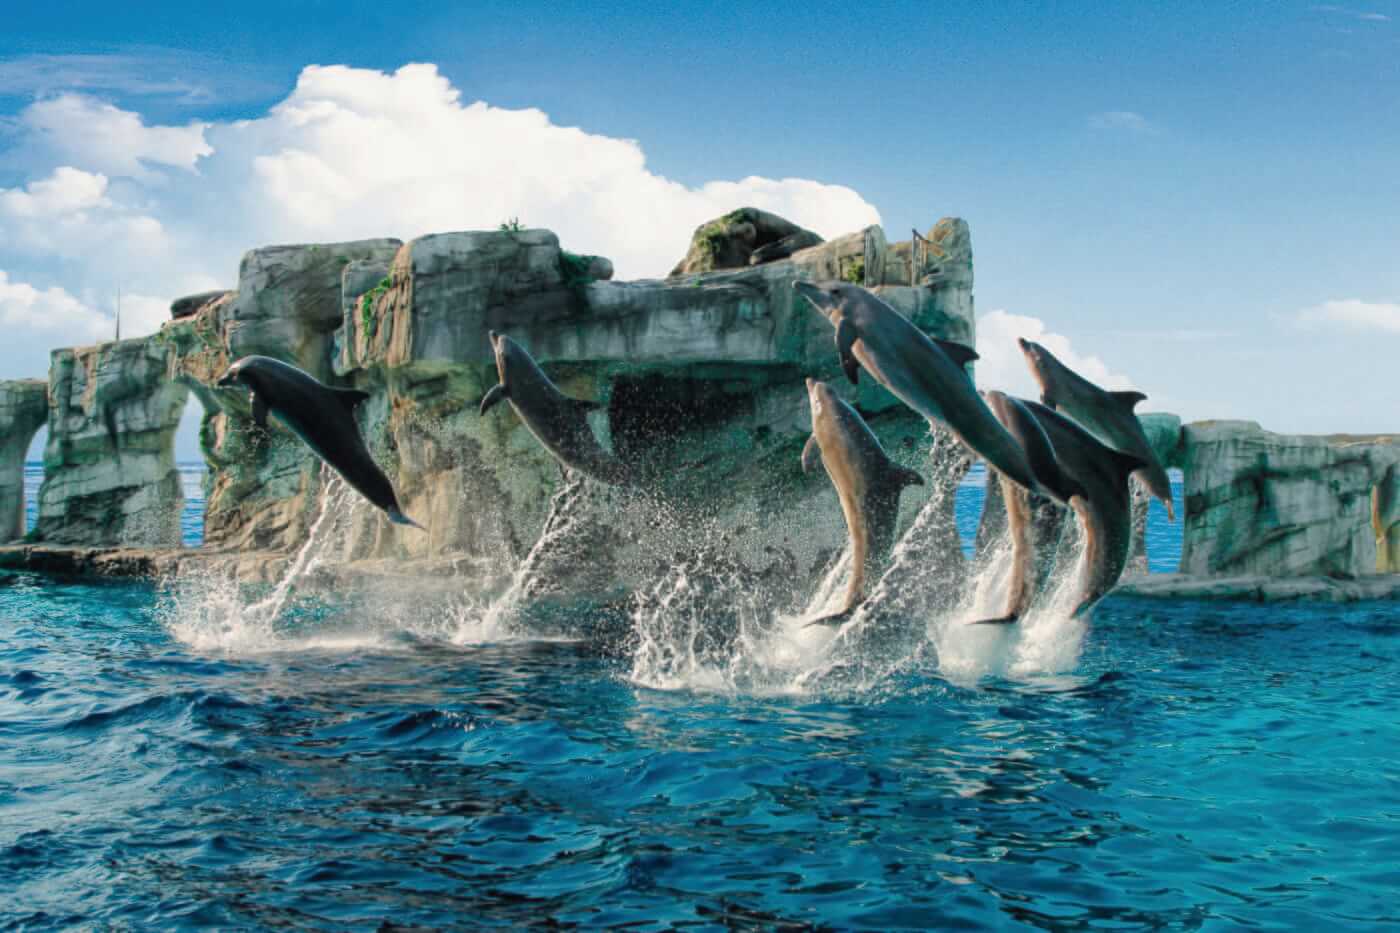 Oltremare e Aquafan, a tu per tu con i delfini e tanti scivoli